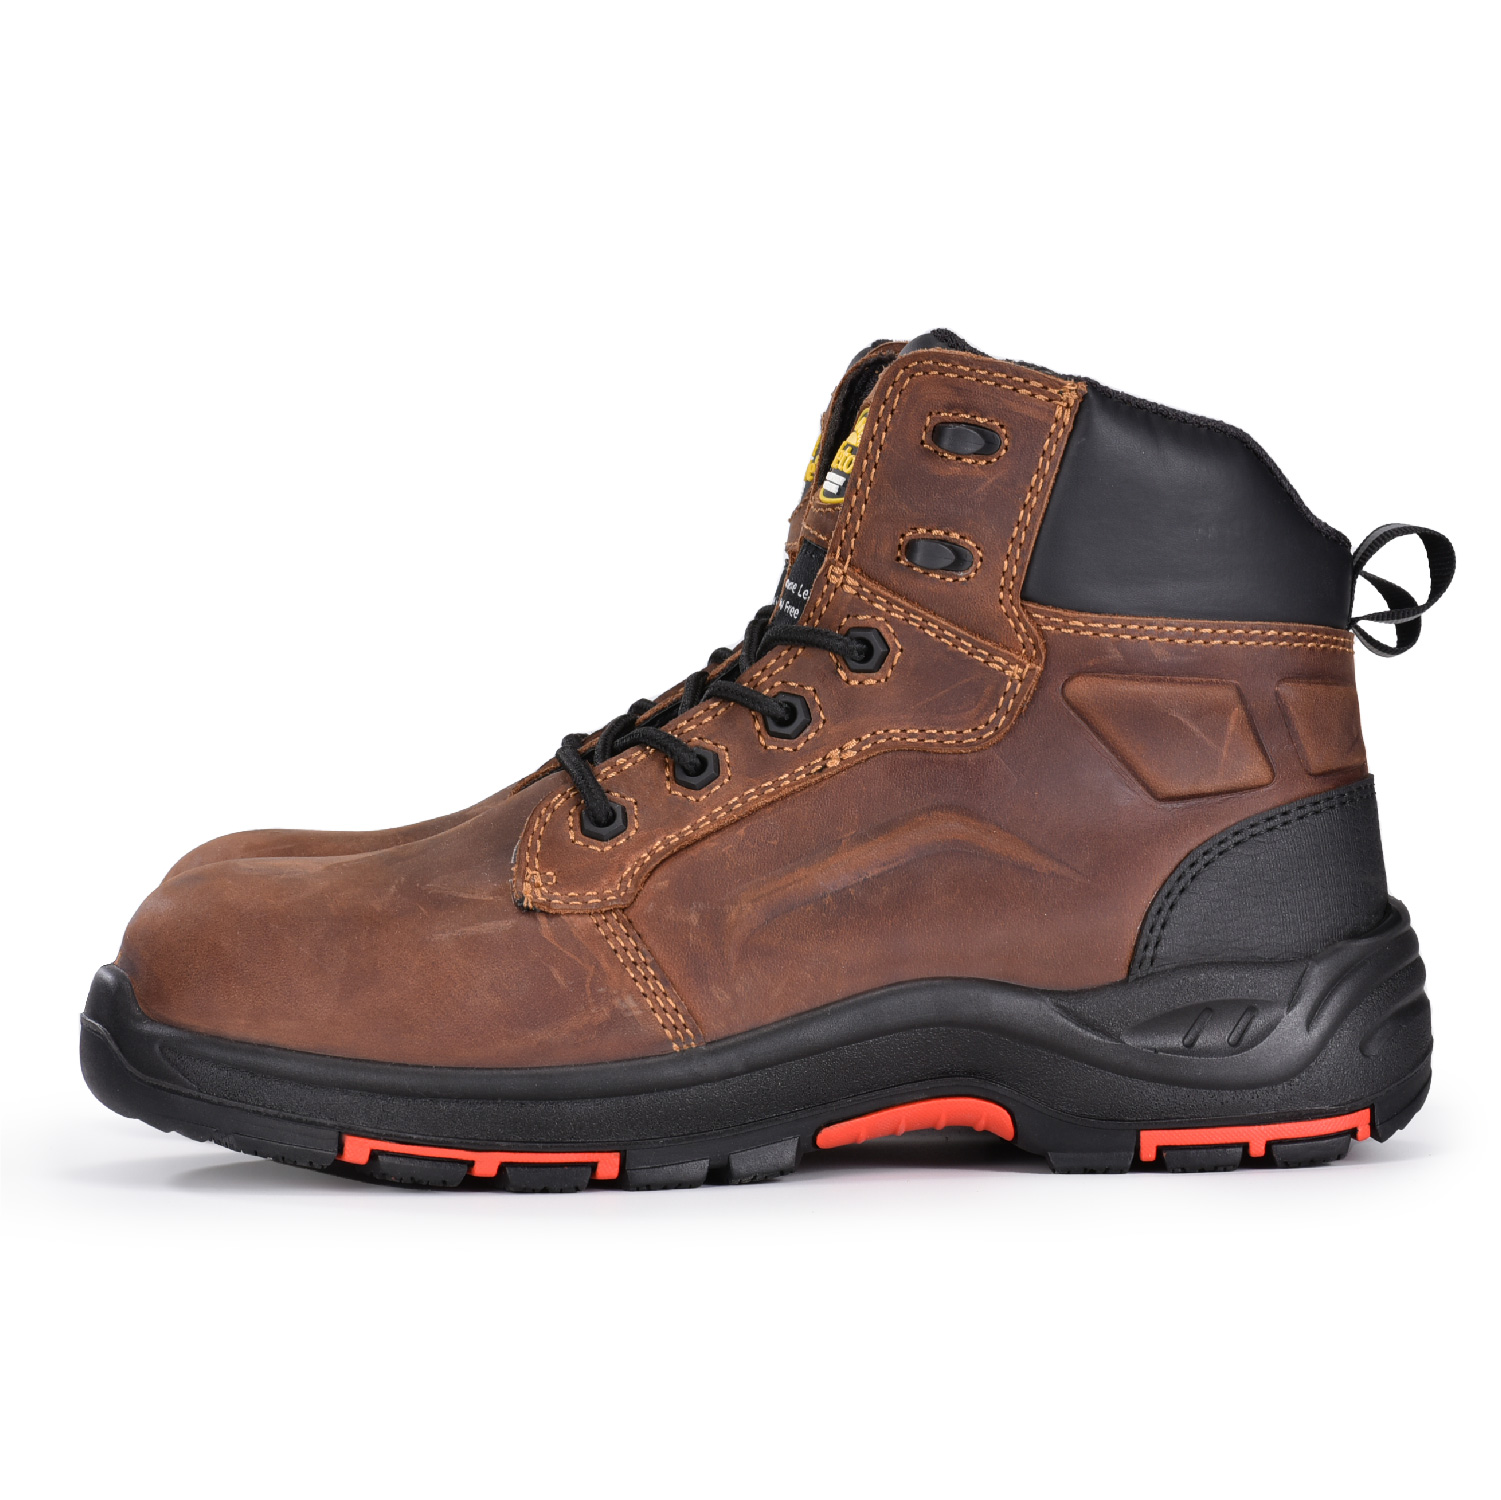 Botas de seguridad duraderas y protectoras para hombre, color marrón, botas de trabajo Chukka M-8552B